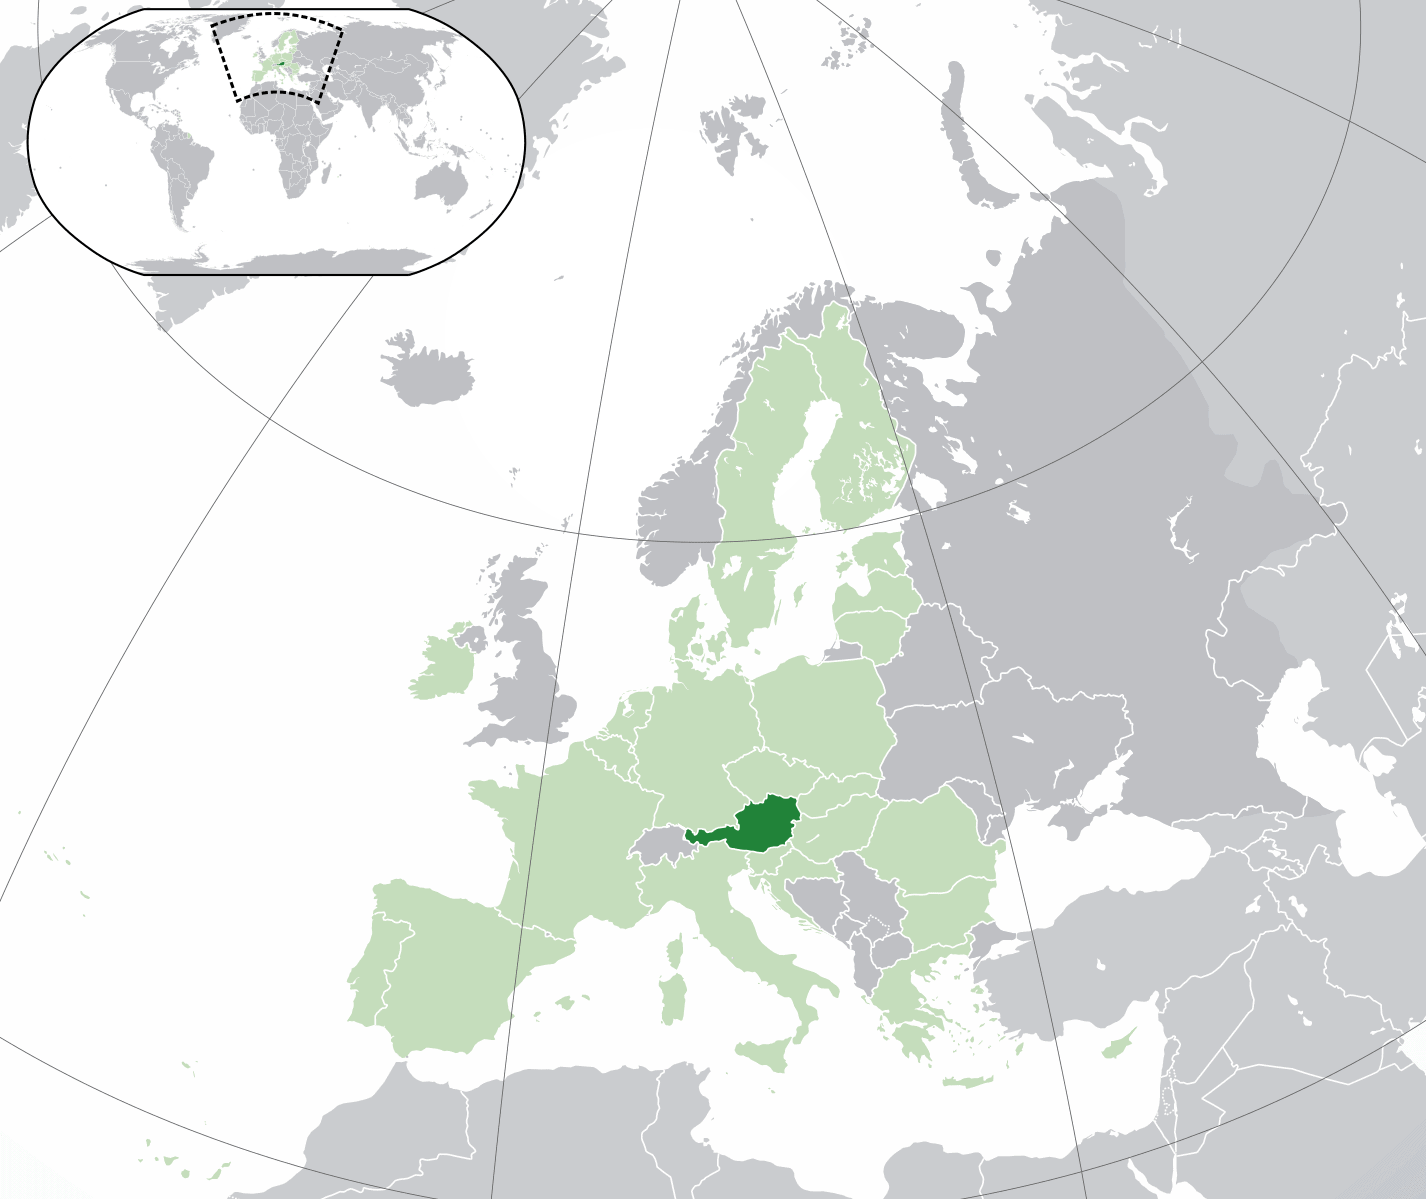 Austria location